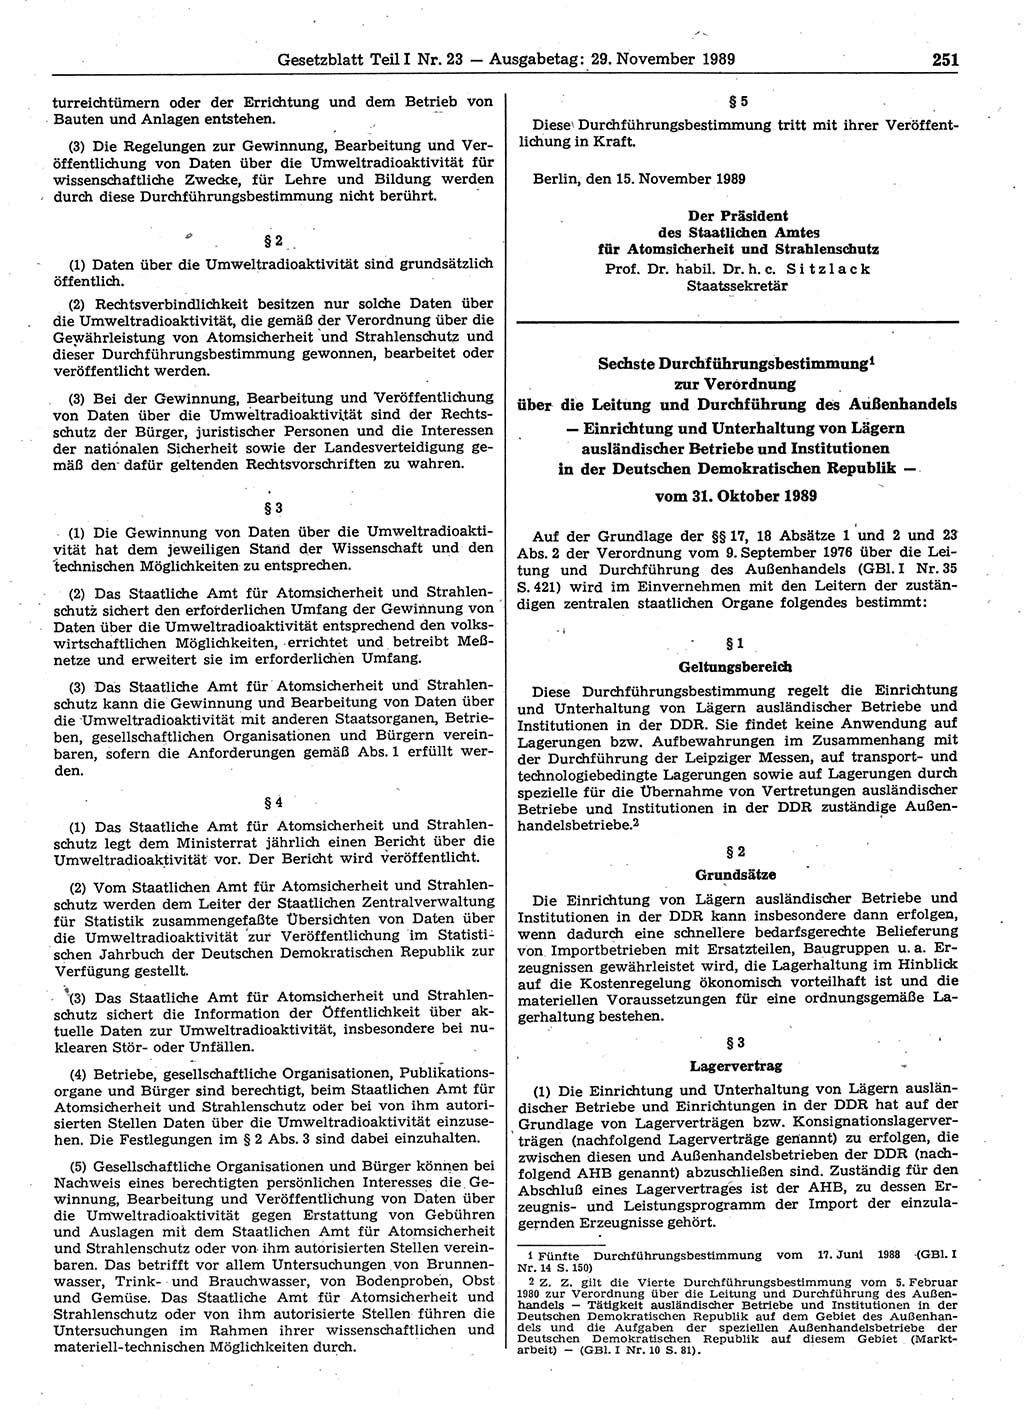 Gesetzblatt (GBl.) der Deutschen Demokratischen Republik (DDR) Teil Ⅰ 1989, Seite 251 (GBl. DDR Ⅰ 1989, S. 251)